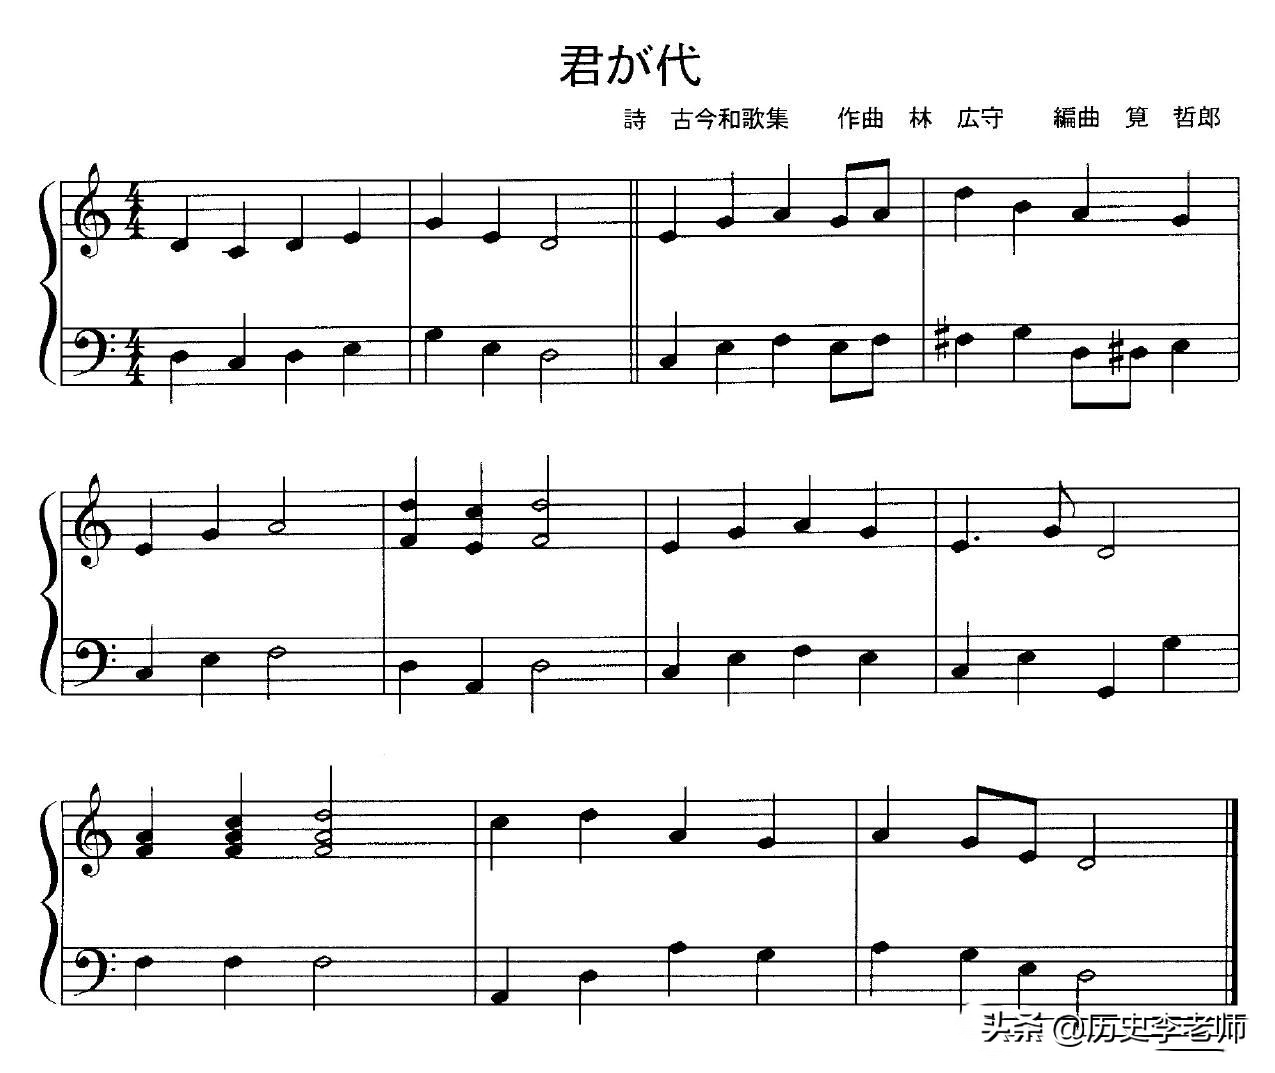 日本国歌完整版原唱(日本国歌一共才四句听着像哀乐，翻译成中文，暴露日本天皇的野心)